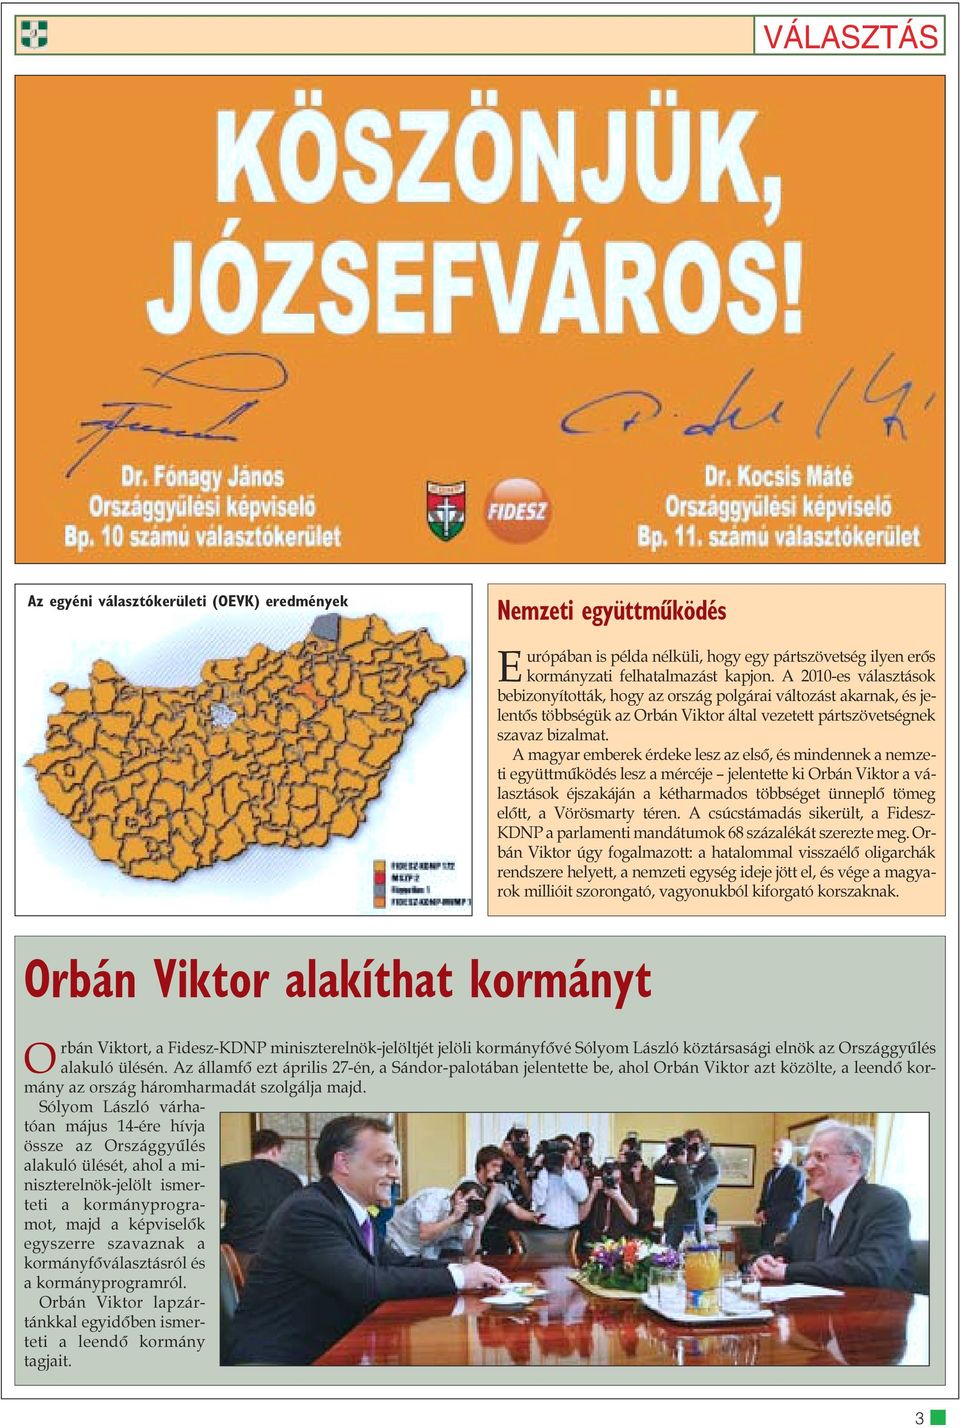 A magyar emberek érdeke lesz az elsõ, és mindennek a nemzeti együttmûködés lesz a mércéje jelentette ki Orbán Viktor a választások éjszakáján a kétharmados többséget ünneplõ tömeg elõtt, a Vörösmarty